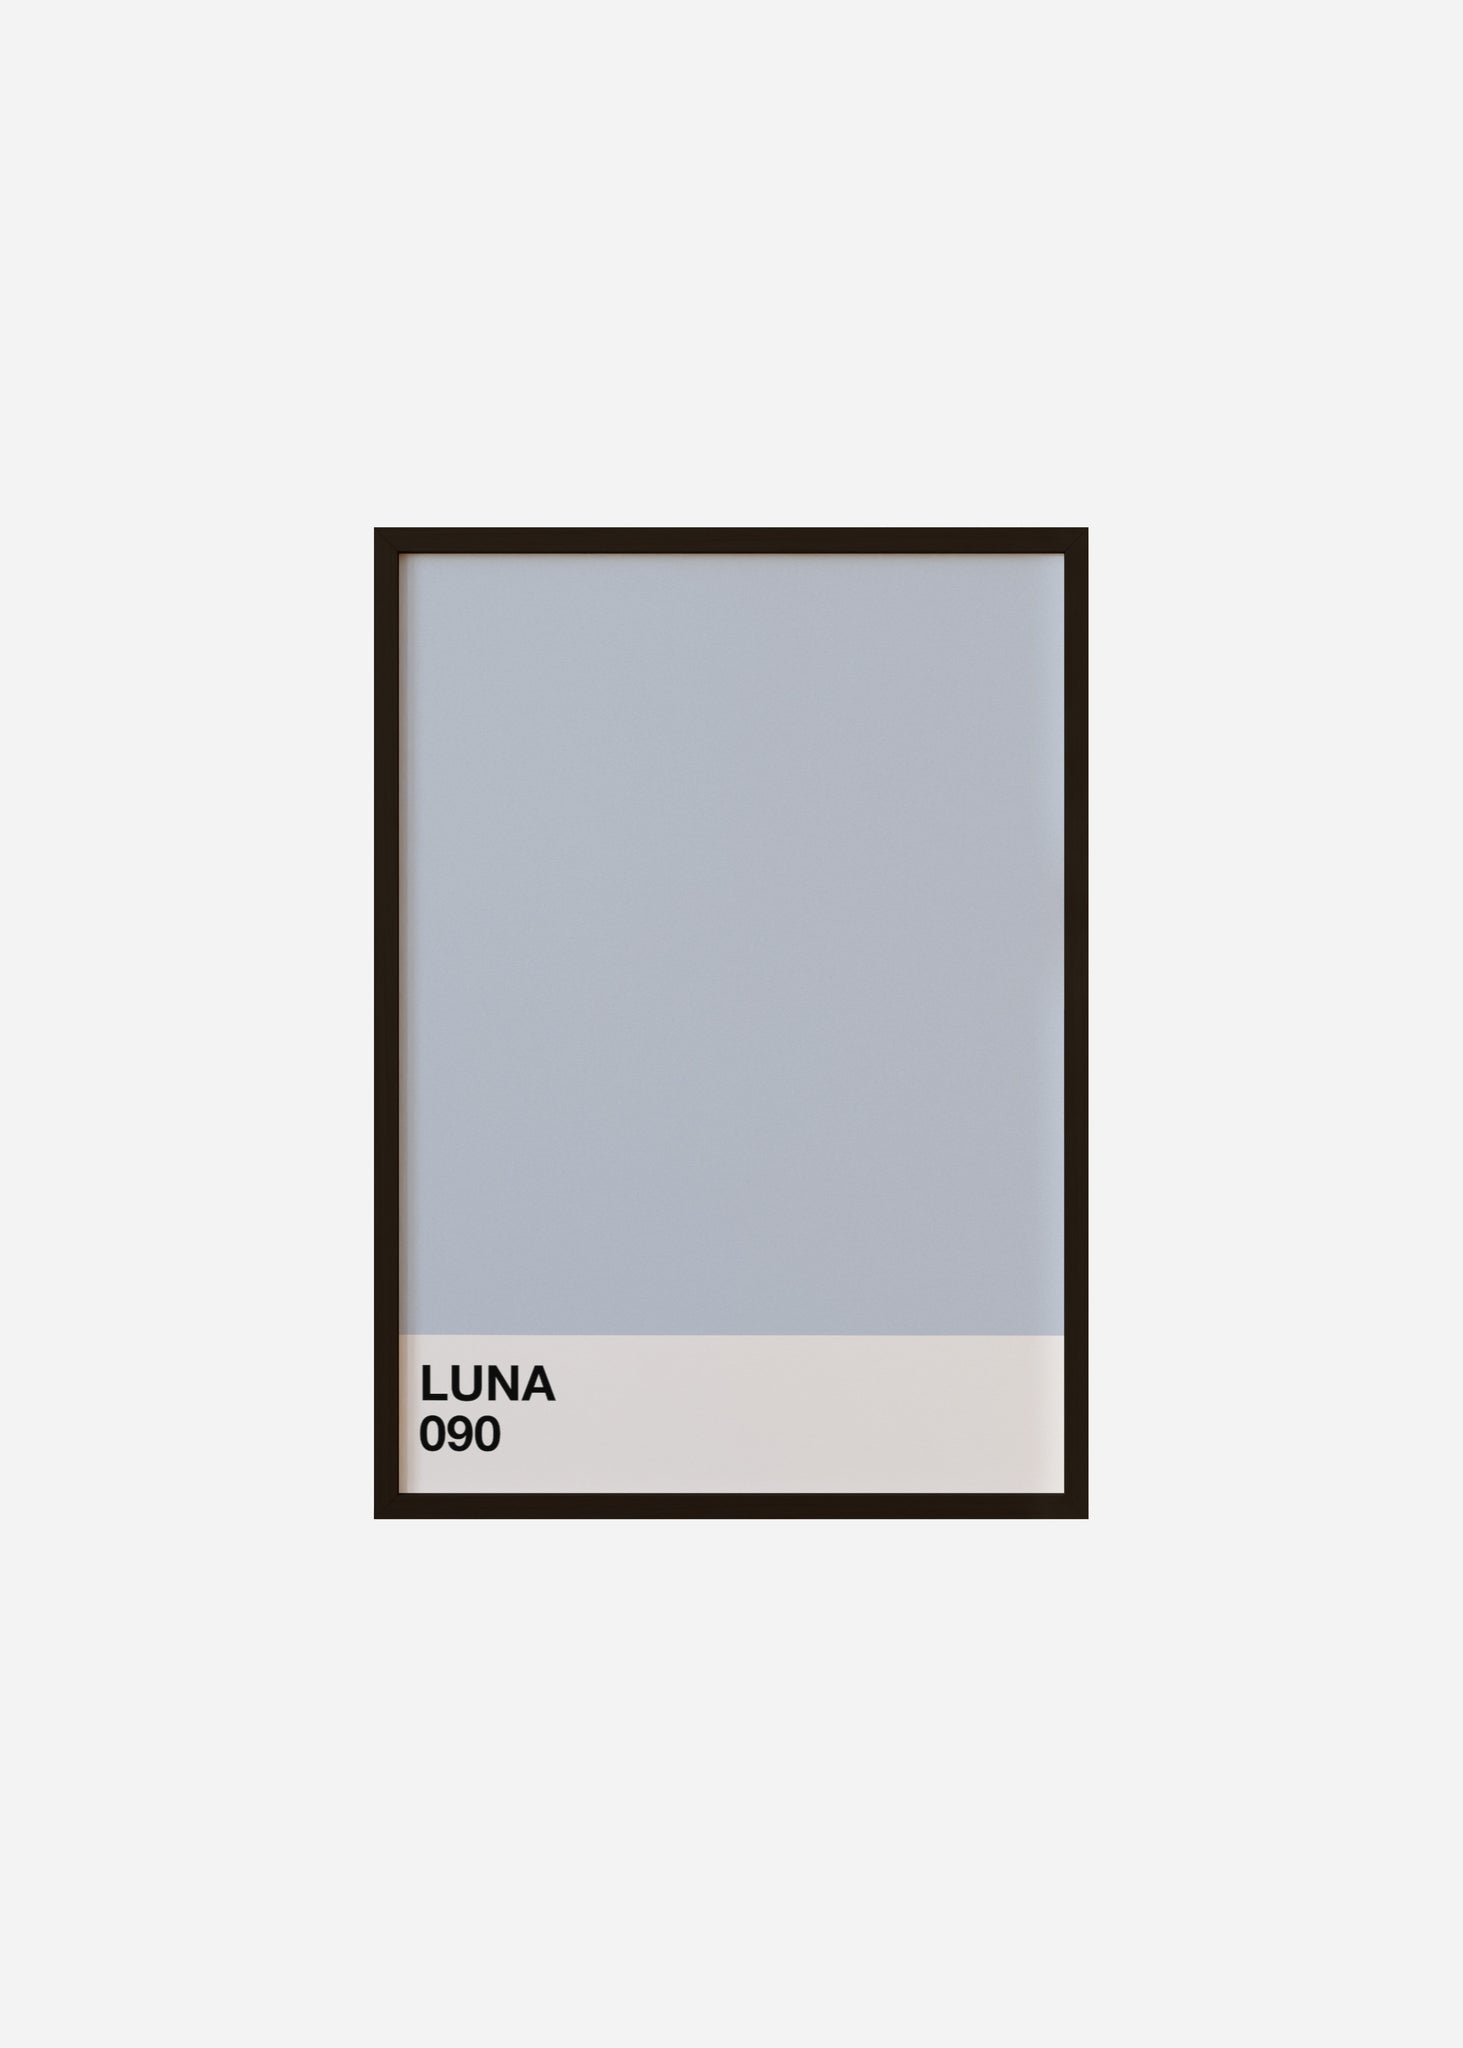 luna Framed Print